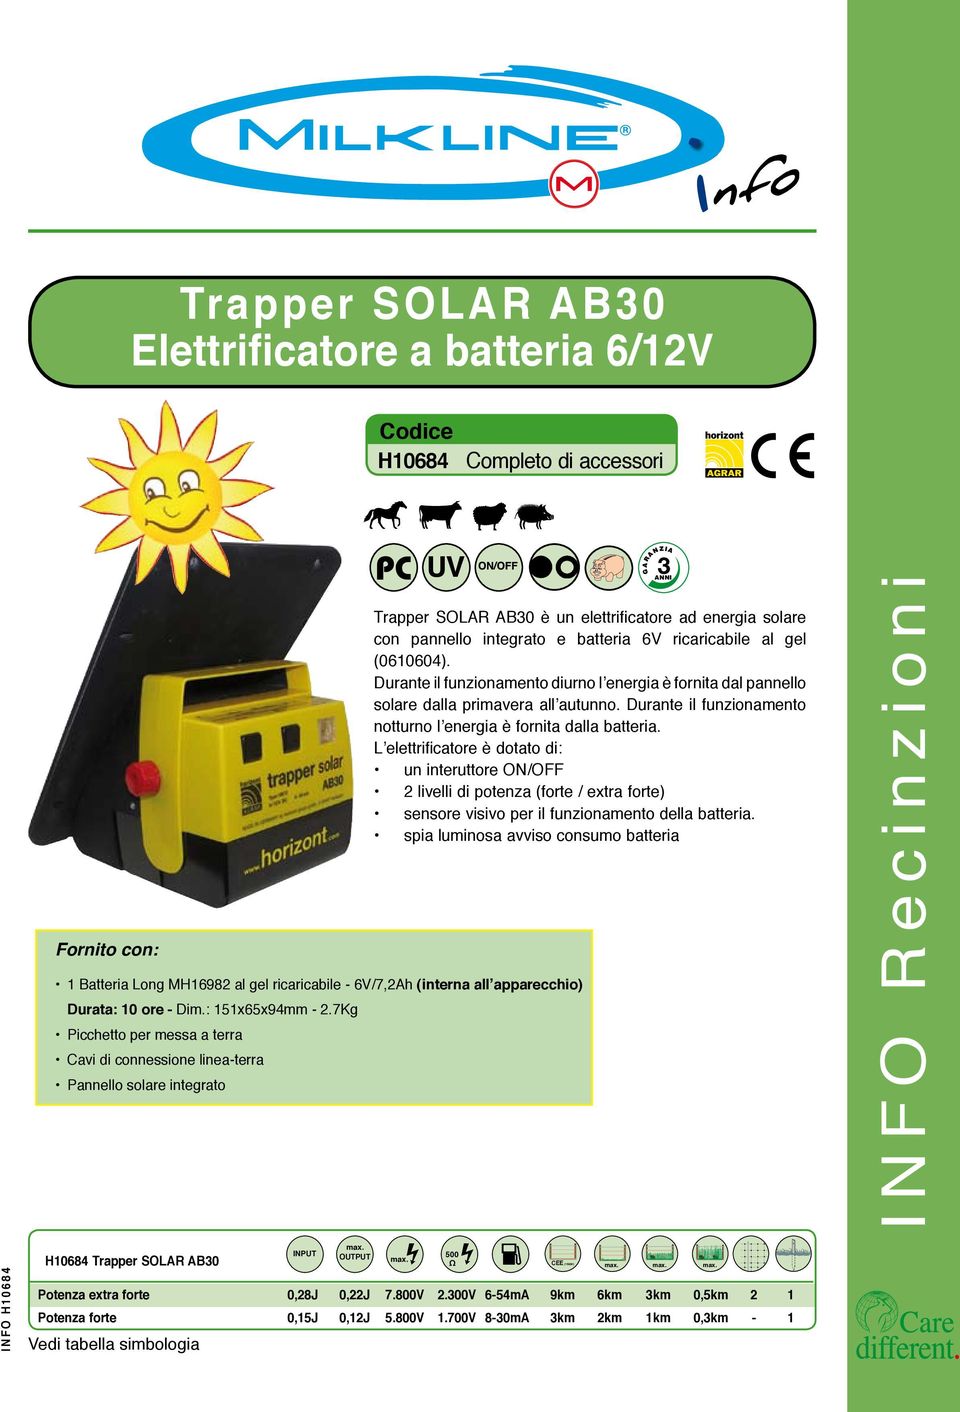 7Kg Picchetto per messa a terra Cavi di connessione linea-terra Pannello solare integrato UV Trapper SOLAR AB30 è un elettrificatore ad energia solare con pannello integrato e batteria 6V